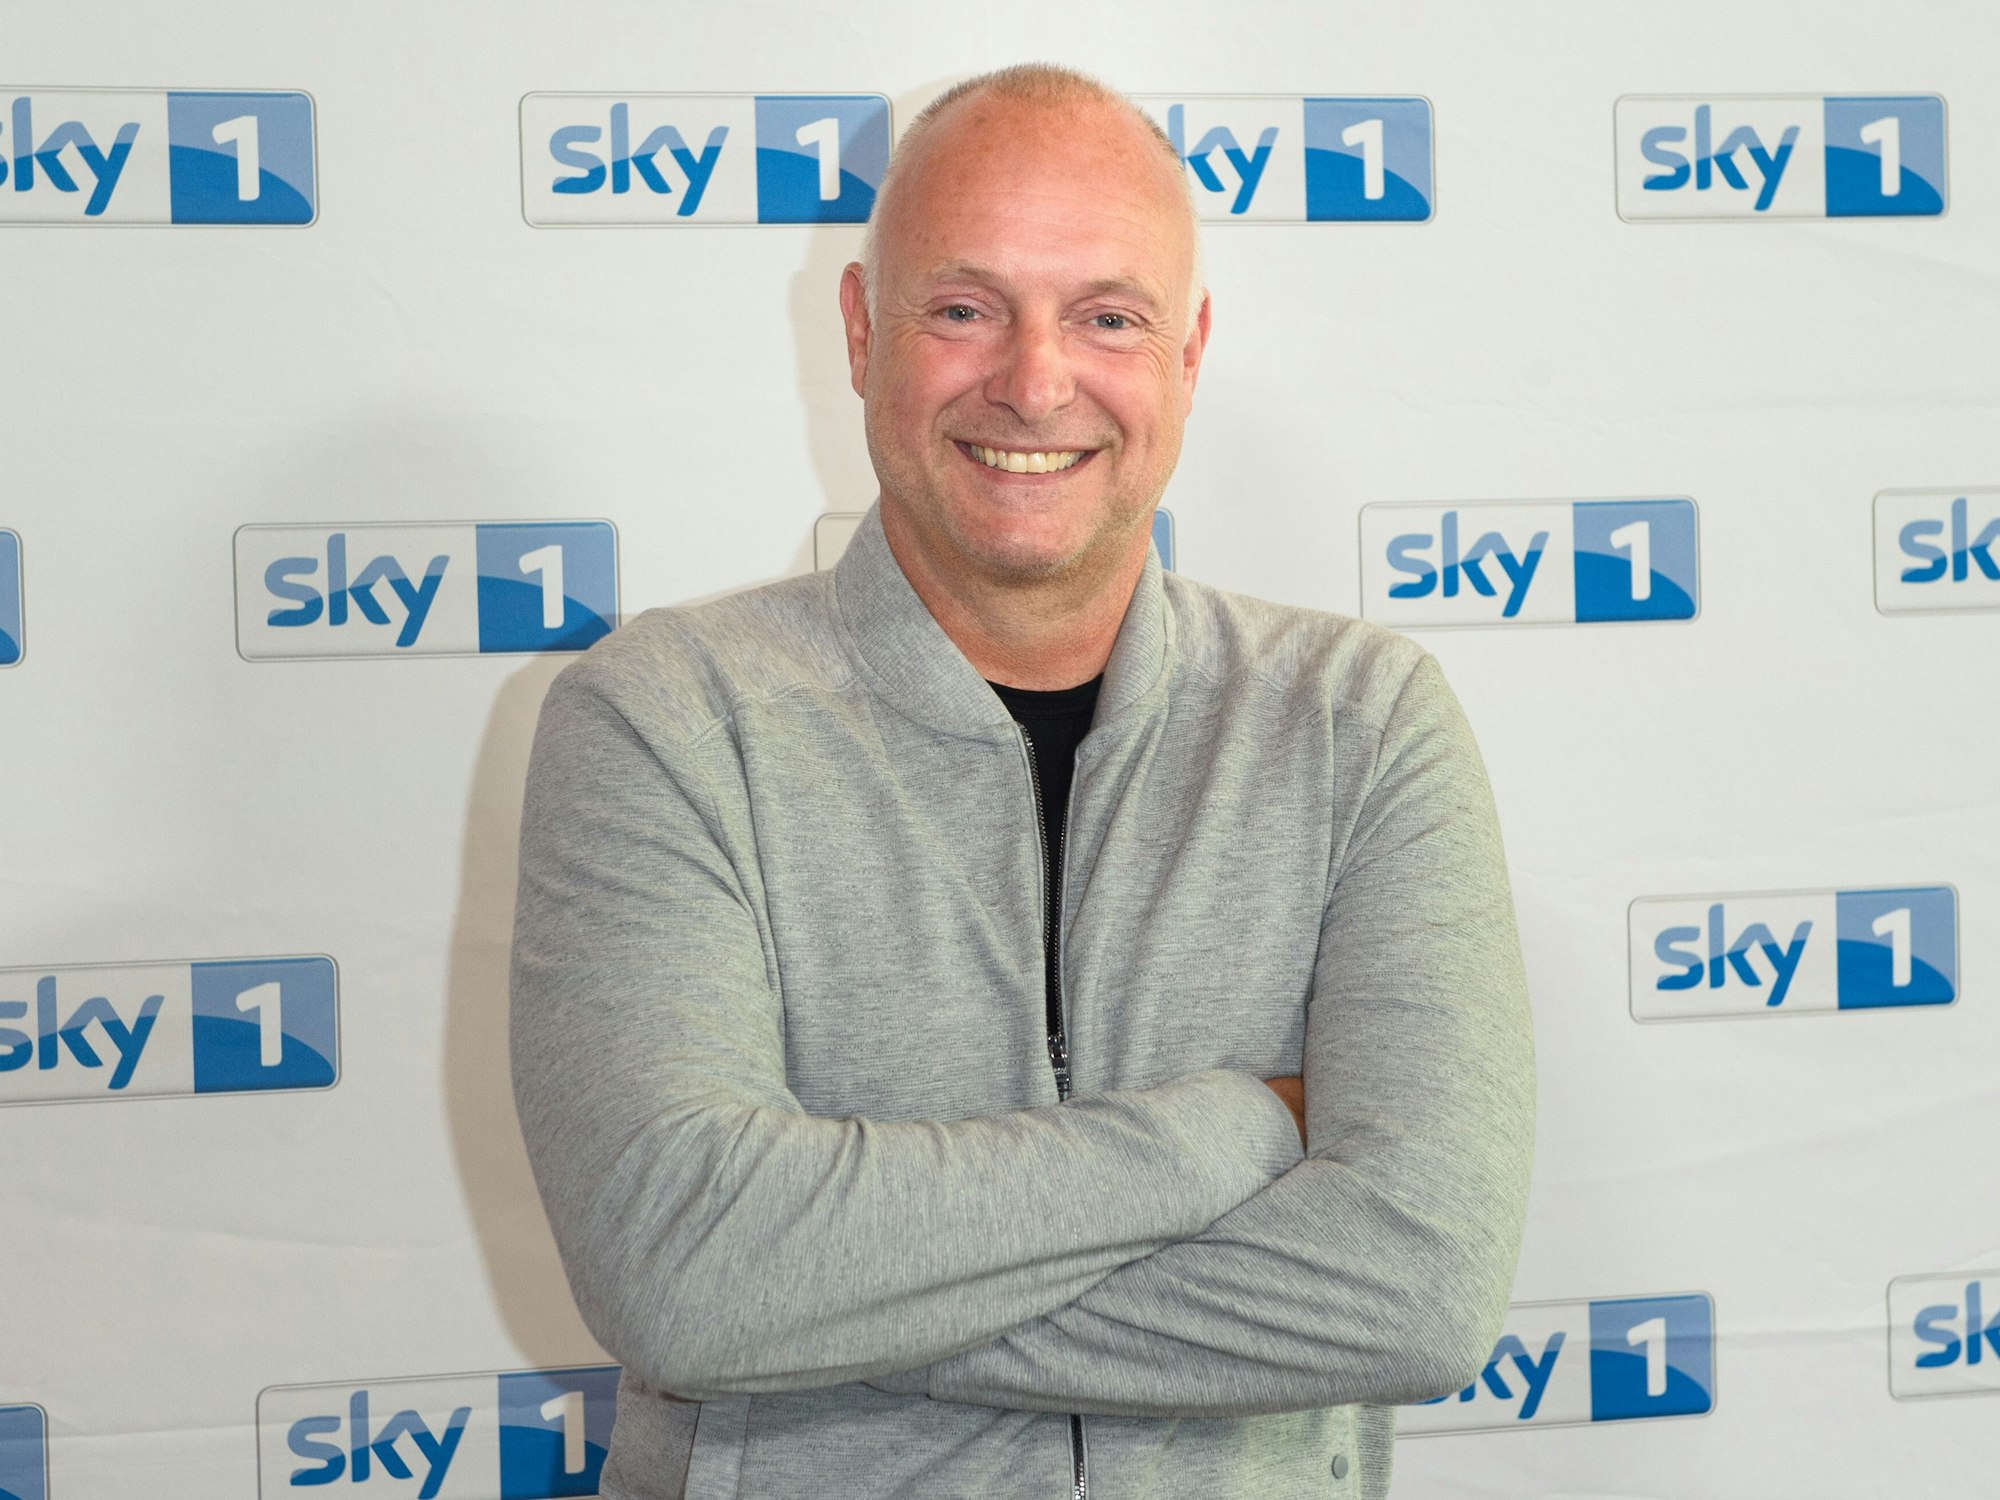 Frank Buschmann steht im Rahmen eines Pressetermins vor einer Logowand des Senders Sky.